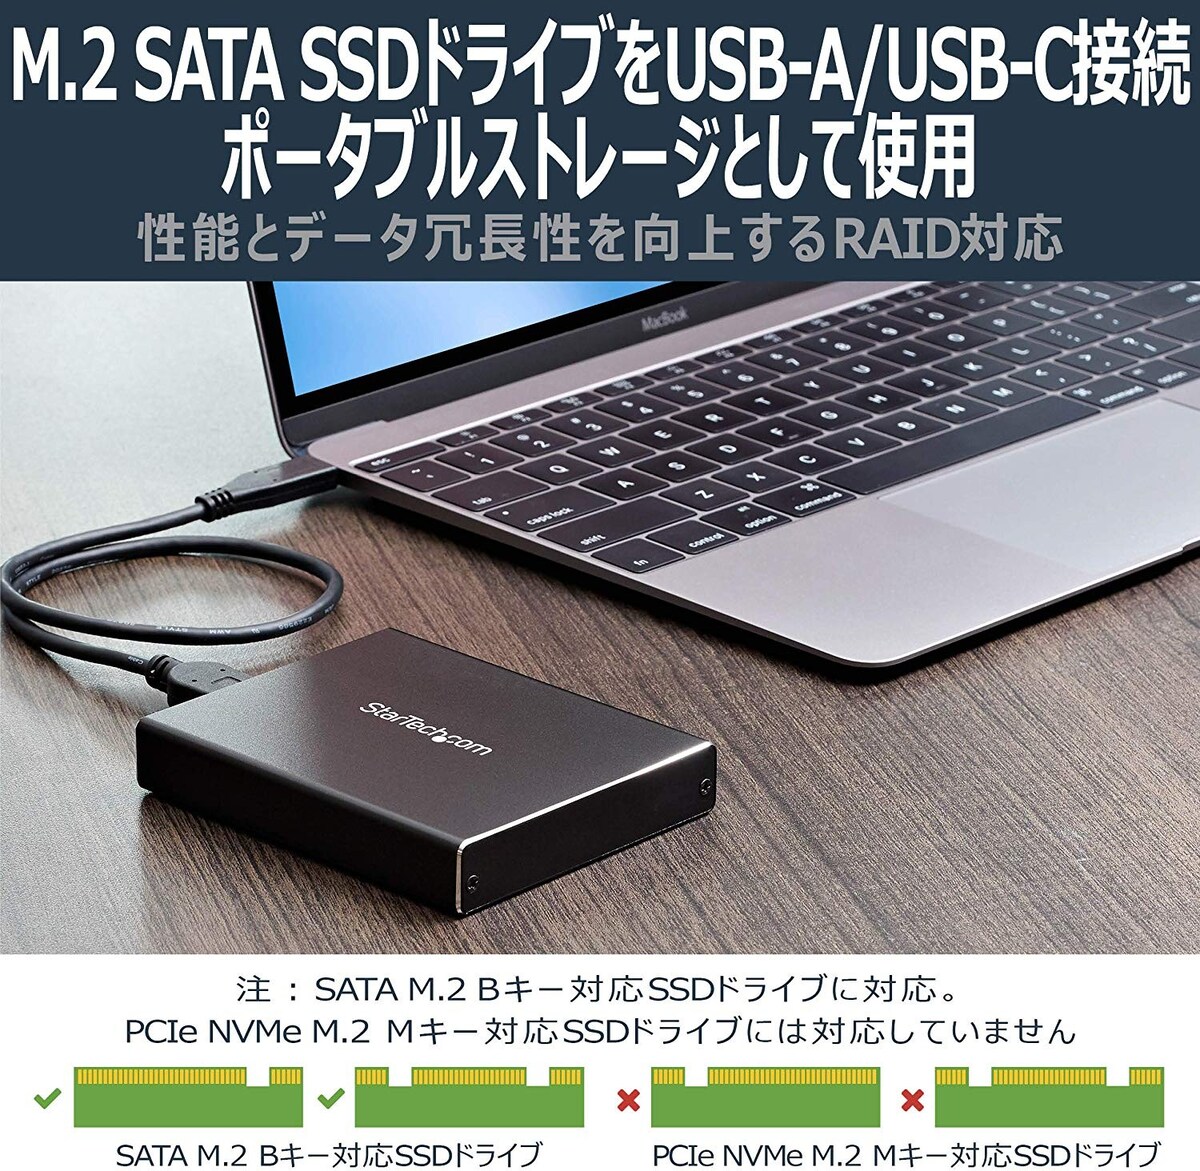  M.2 SATA SSD対応デュアルスロットアダプタケース画像2 